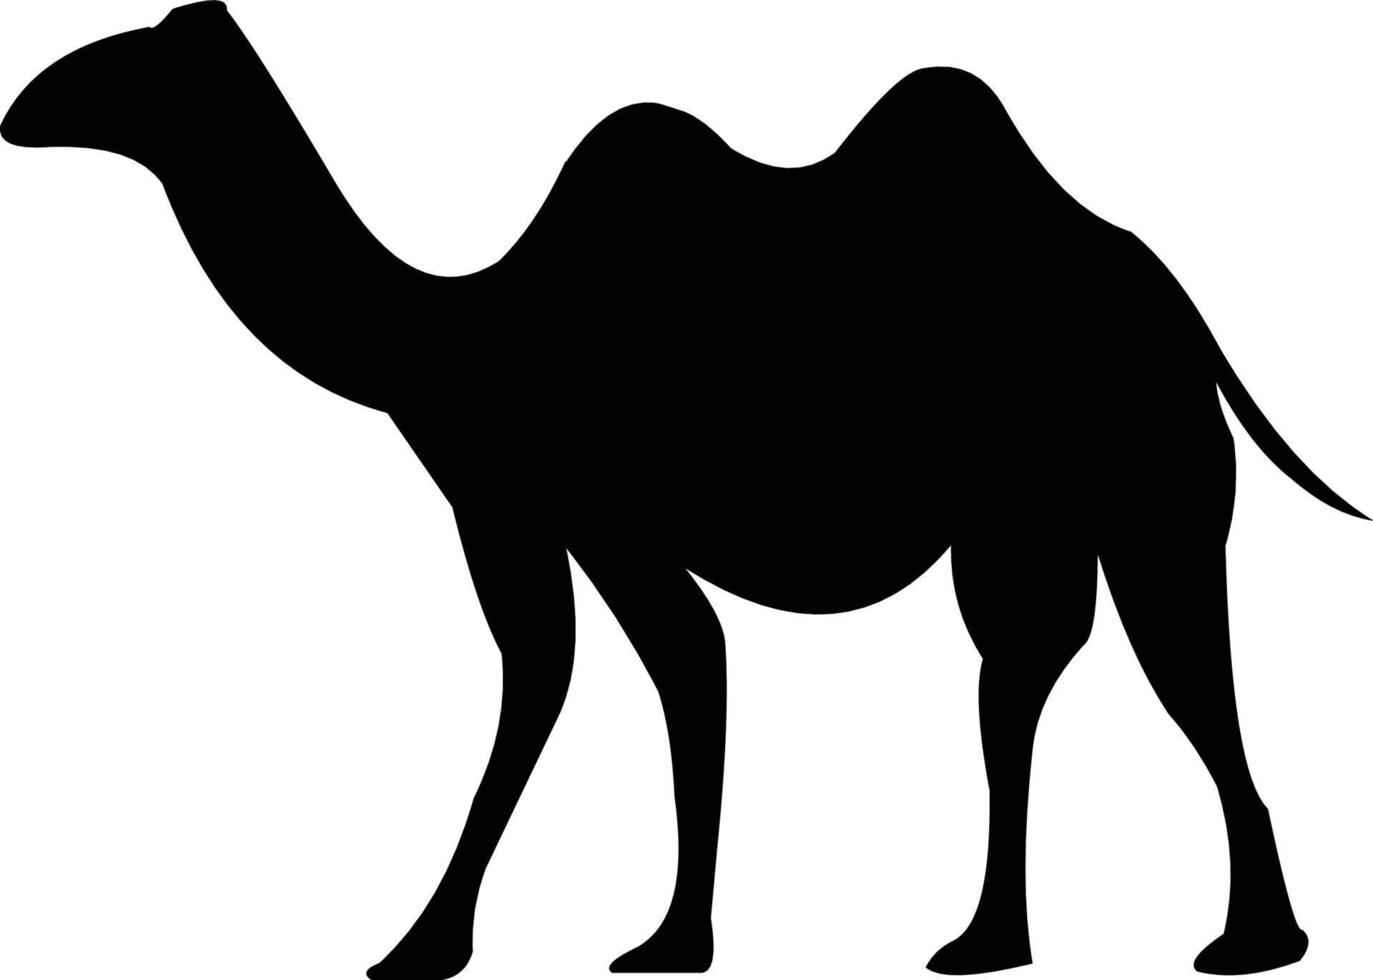 imágenes vectoriales de camellos en blanco y negro que puede usar según sea necesario vector